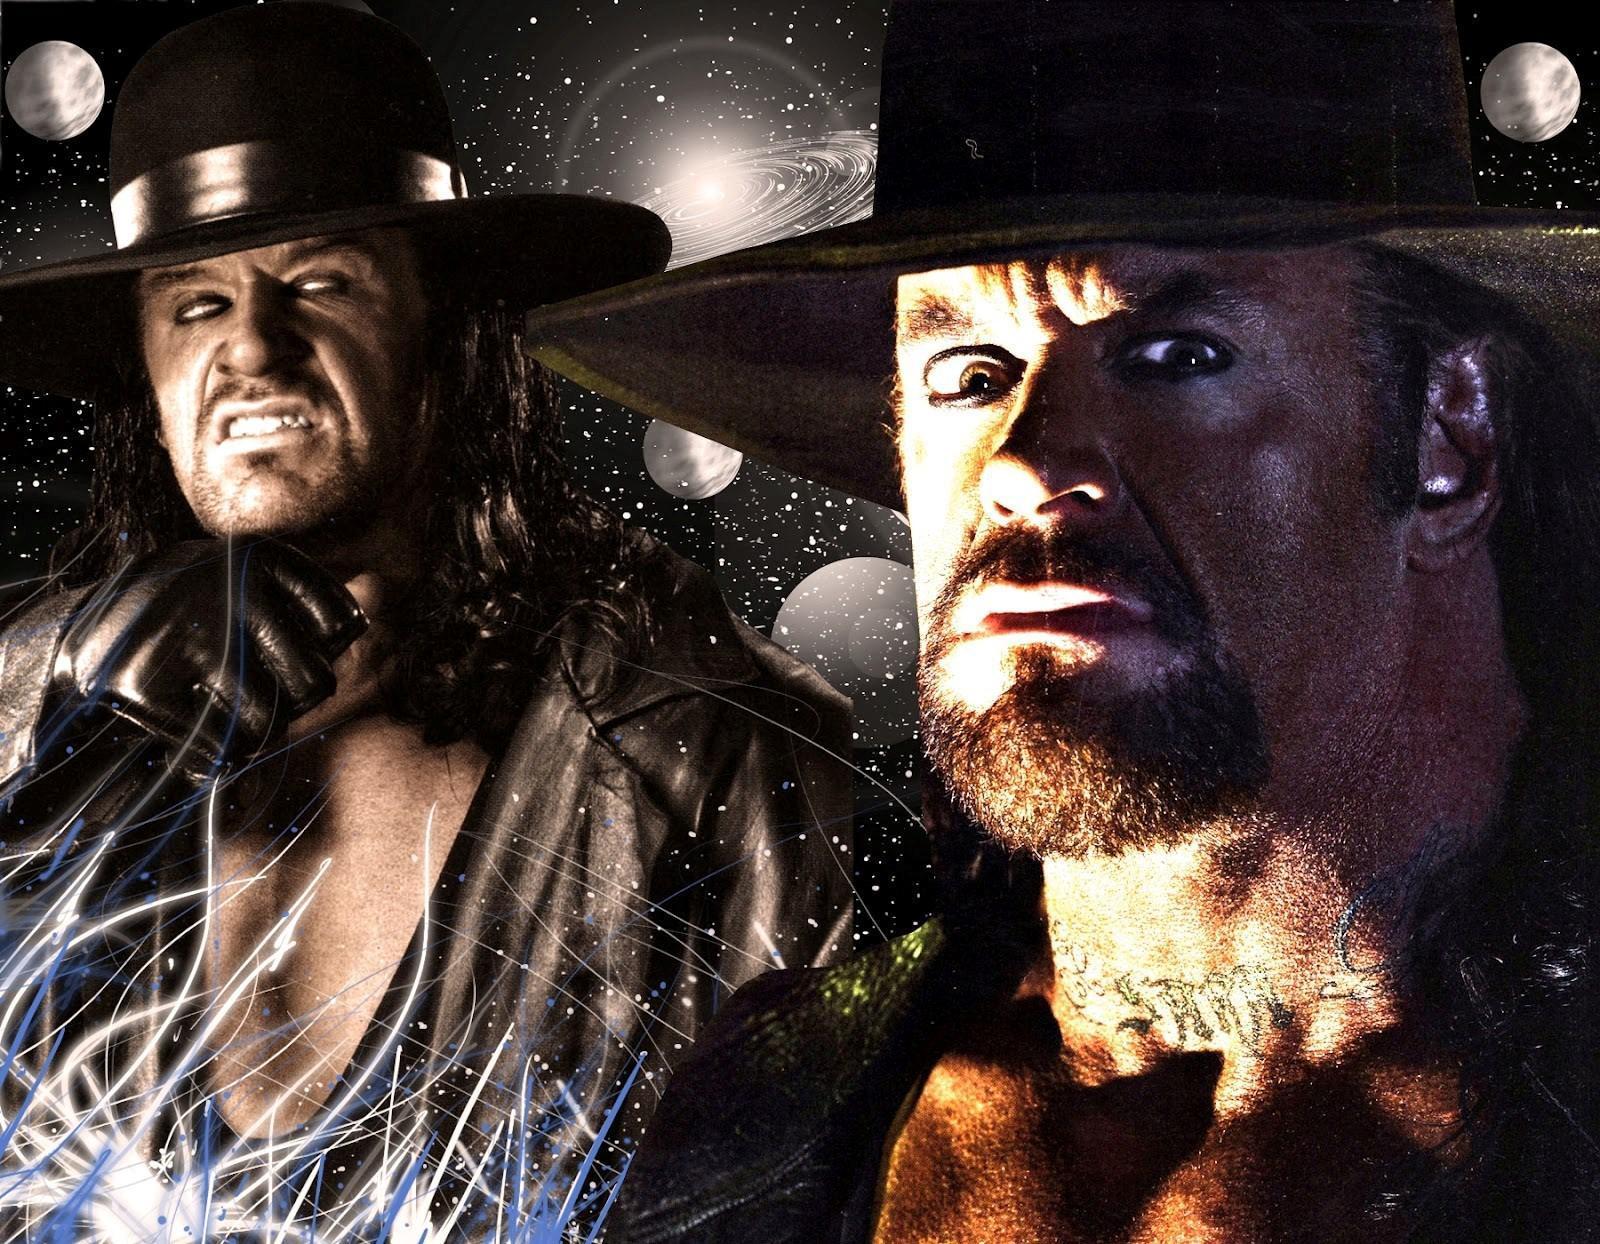 Undertaker Wallpaper 2015 HD